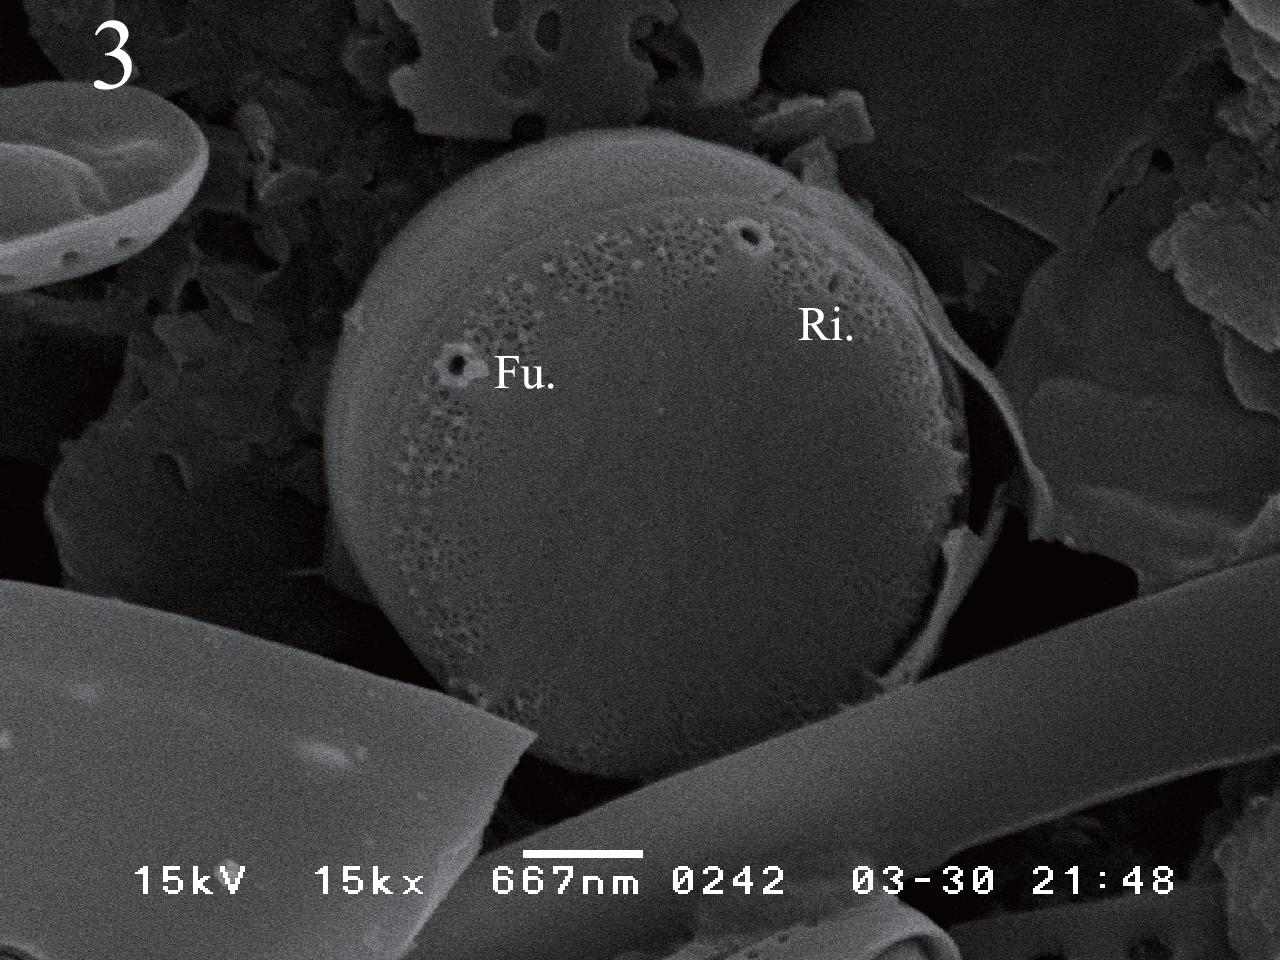 Cyclotella atomus var. marina SEM photos. Figs 2 & 3. External view, showing marginal fultoportula (Fu.) and rimoportula (Ri.)